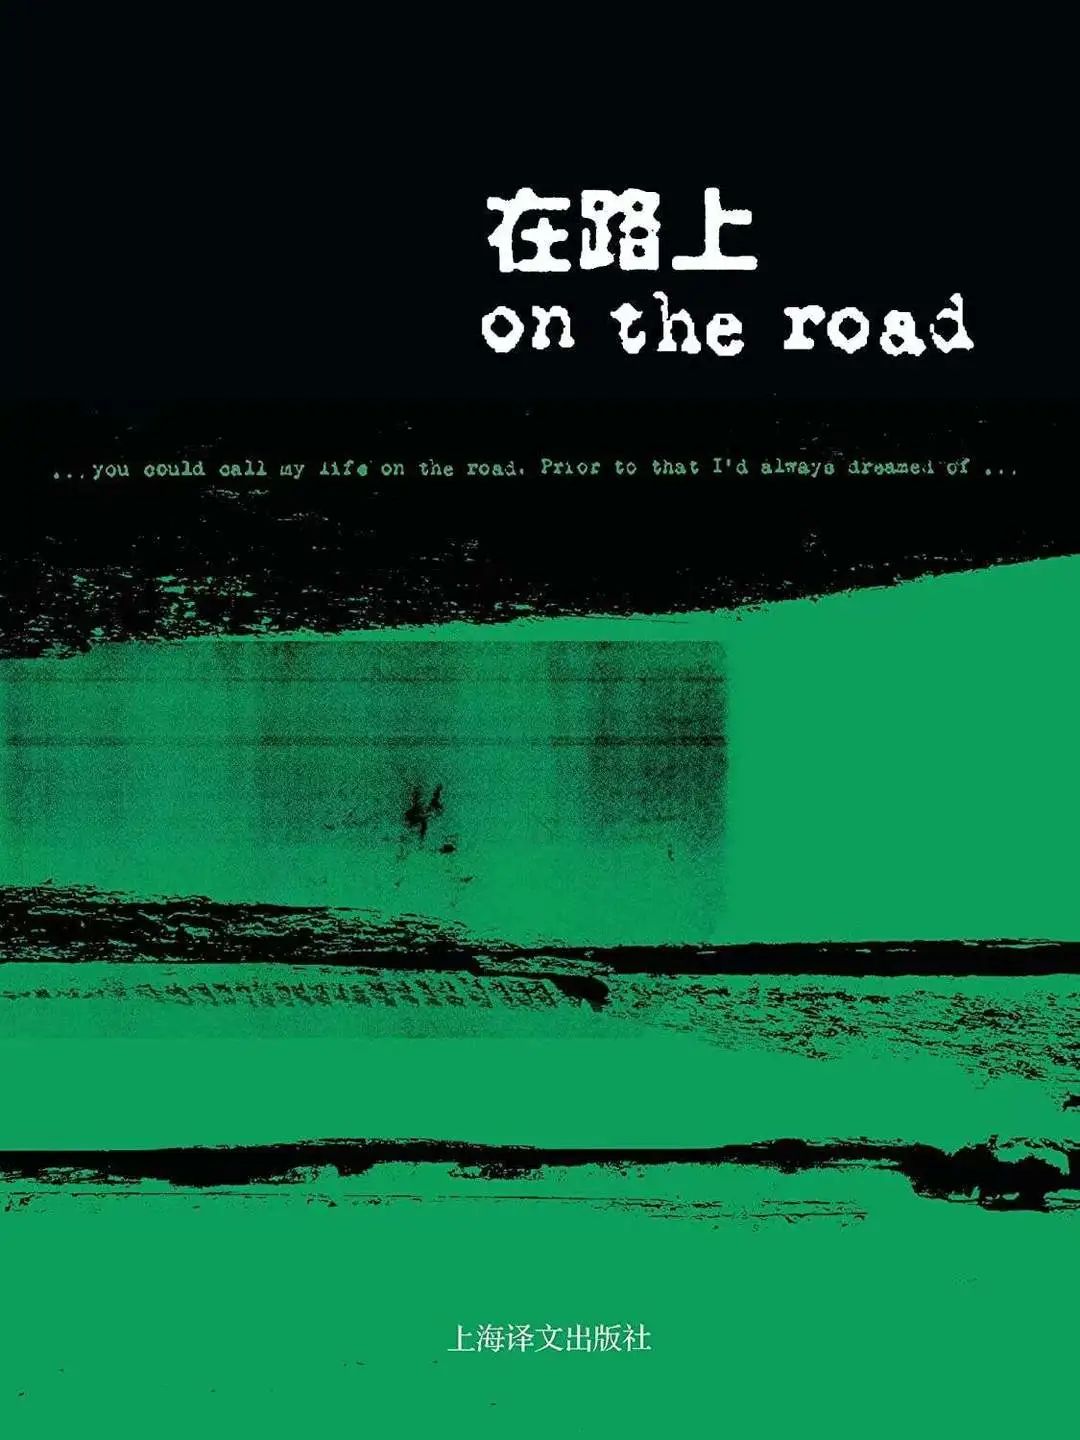 519中国旅游日专稿丨二鱼：路的尽头——我的旅行故事